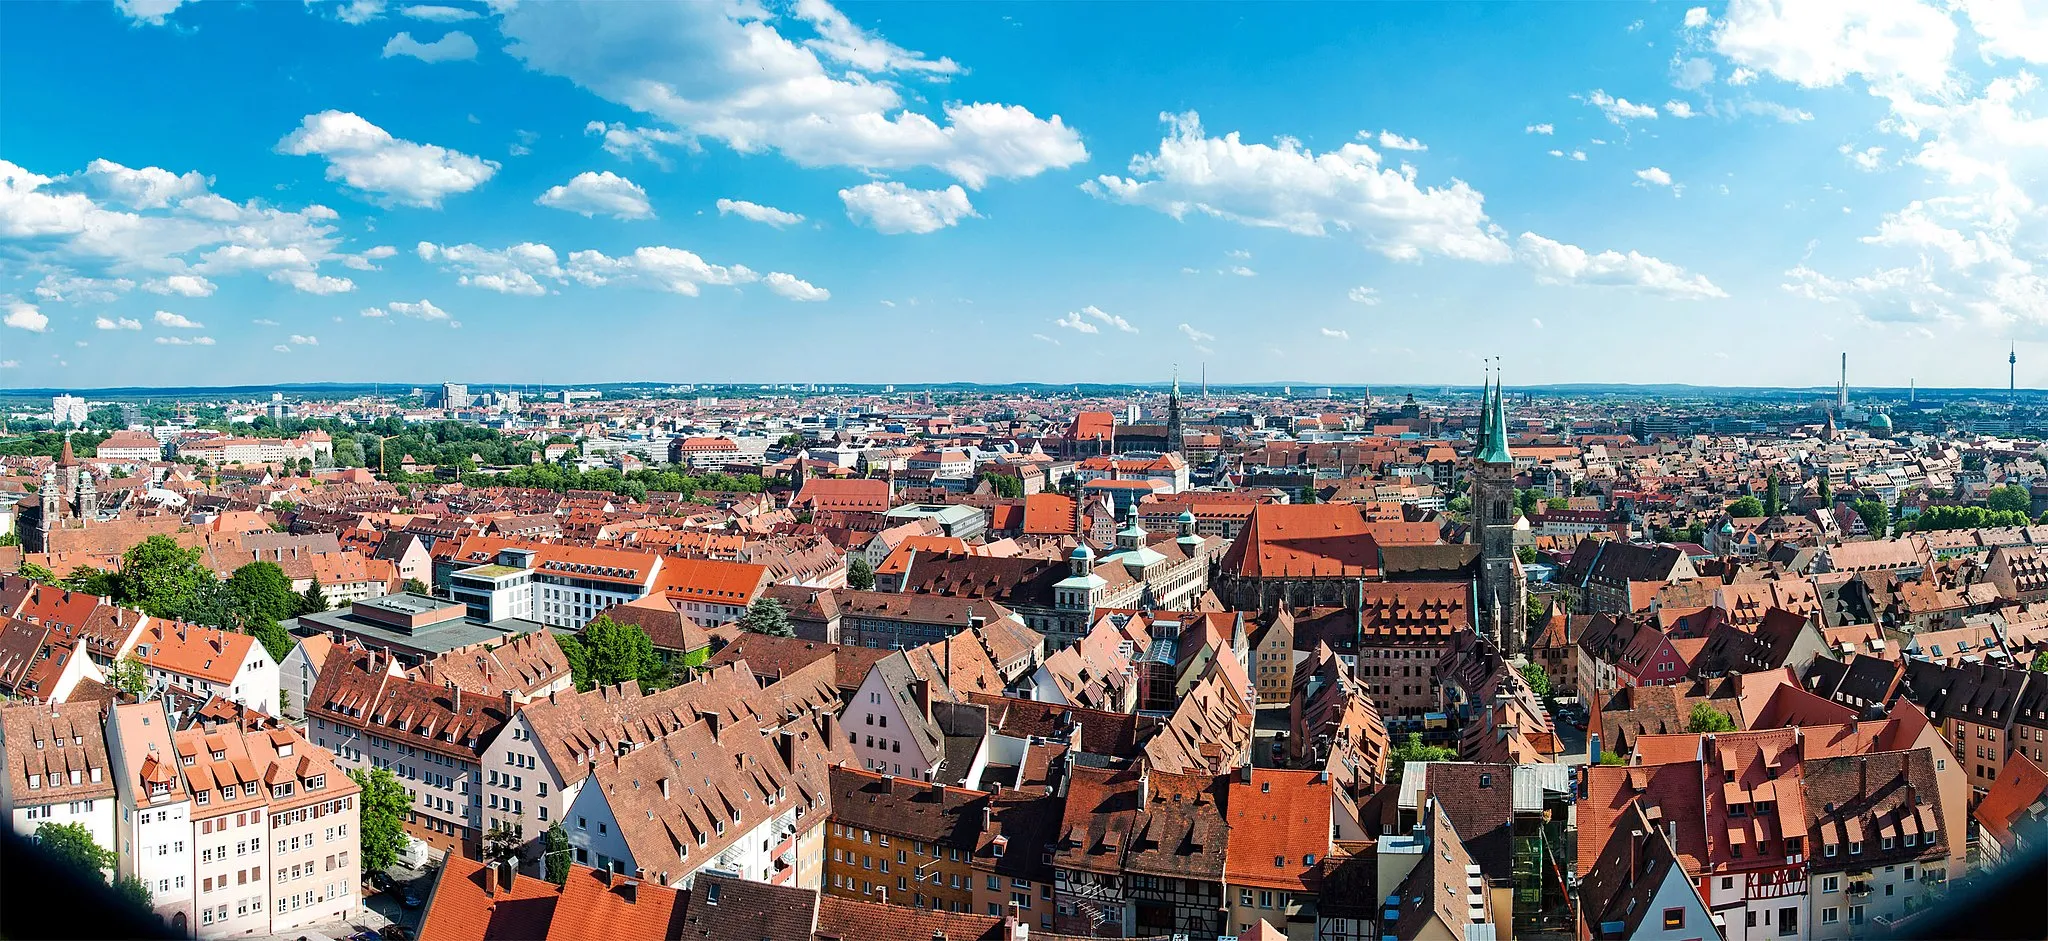 Image of Nürnberg